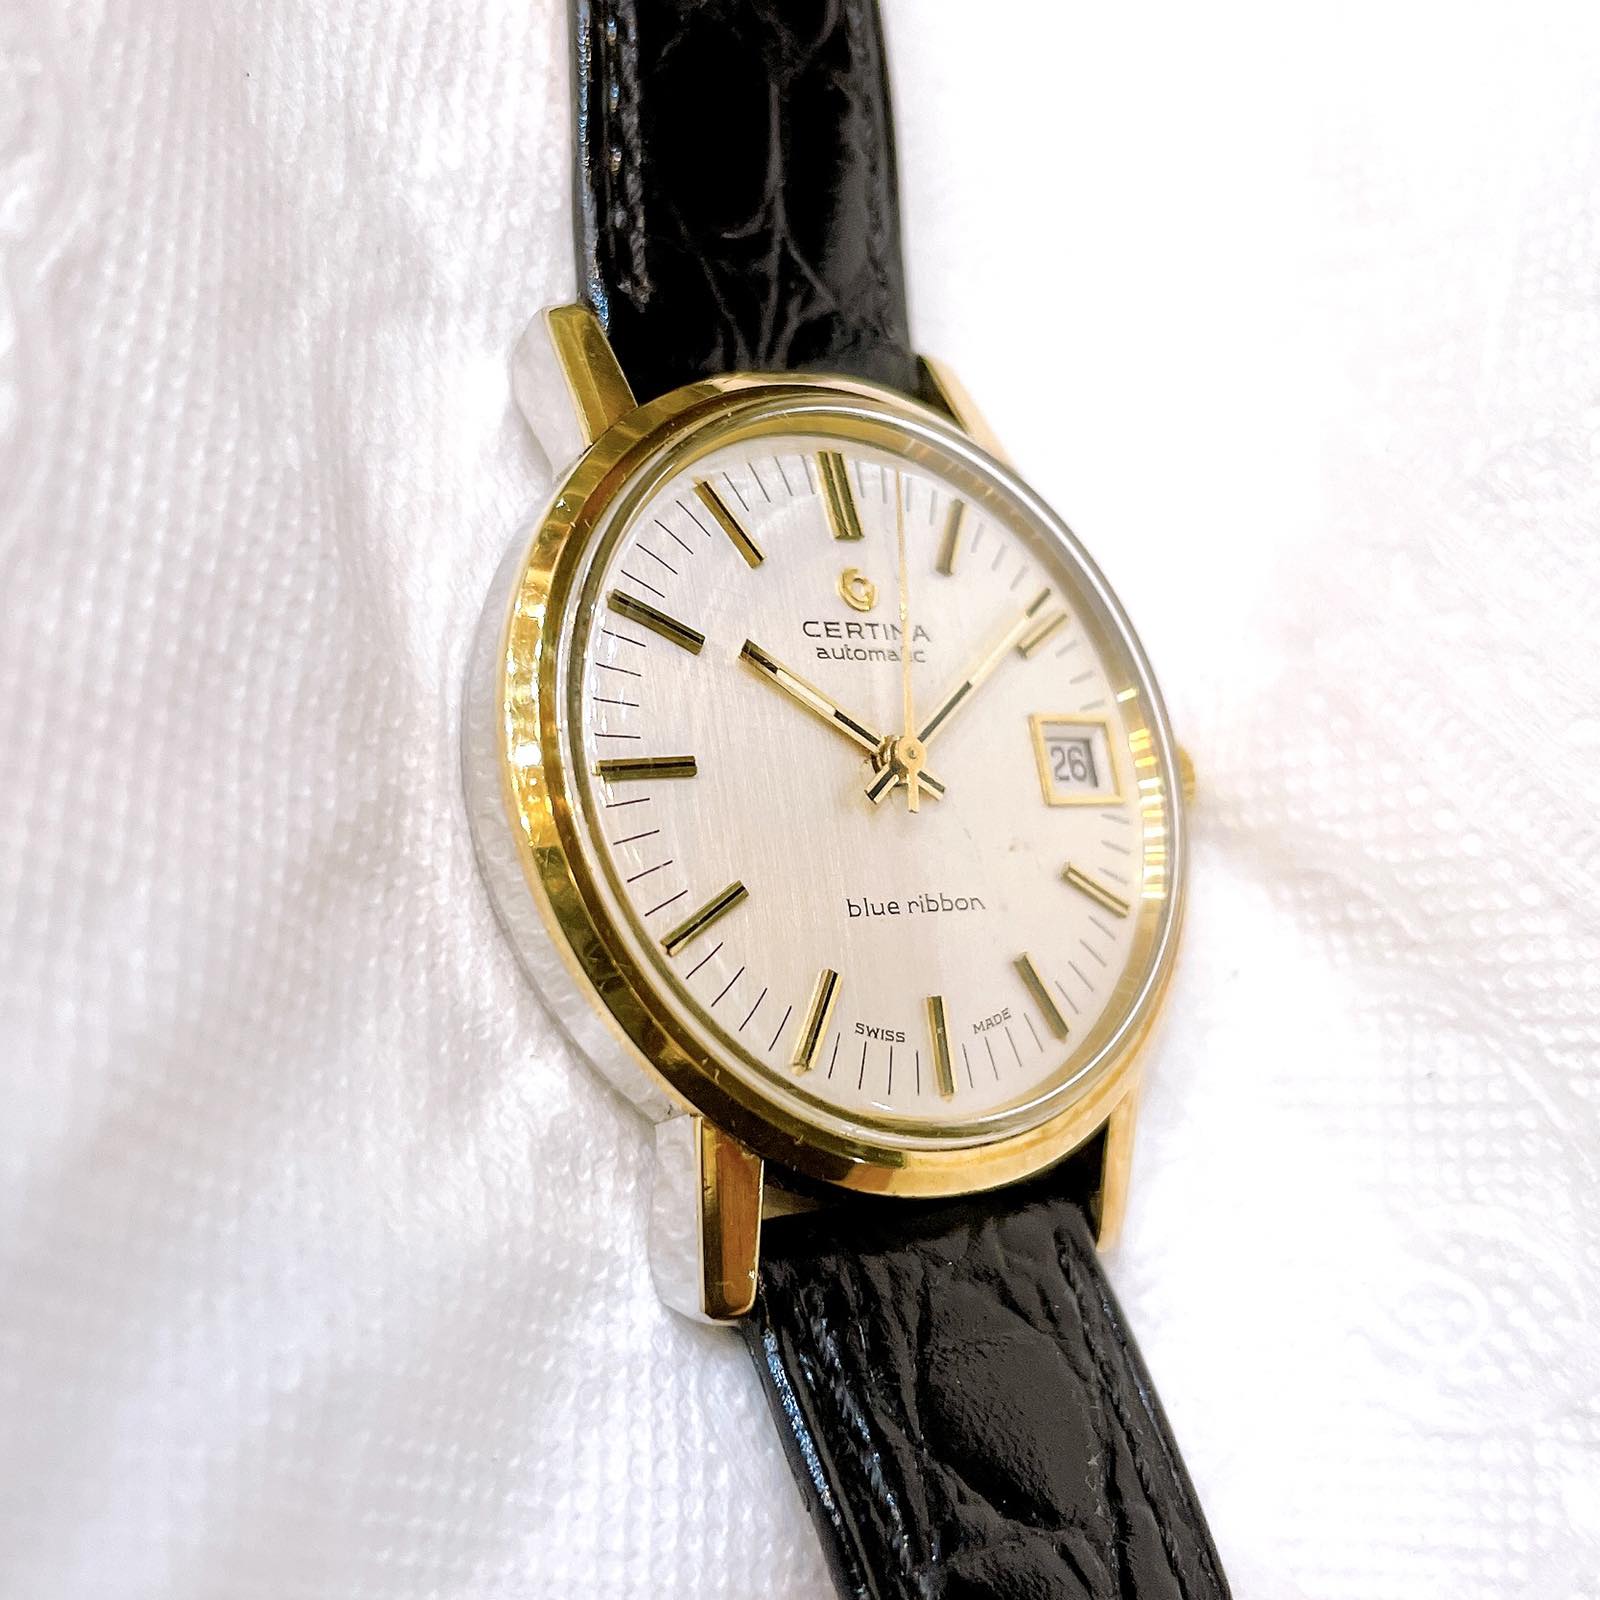 Đồng hồ cổ Certina Blue Ribbon Automatic chính hãng Thụy Sĩ